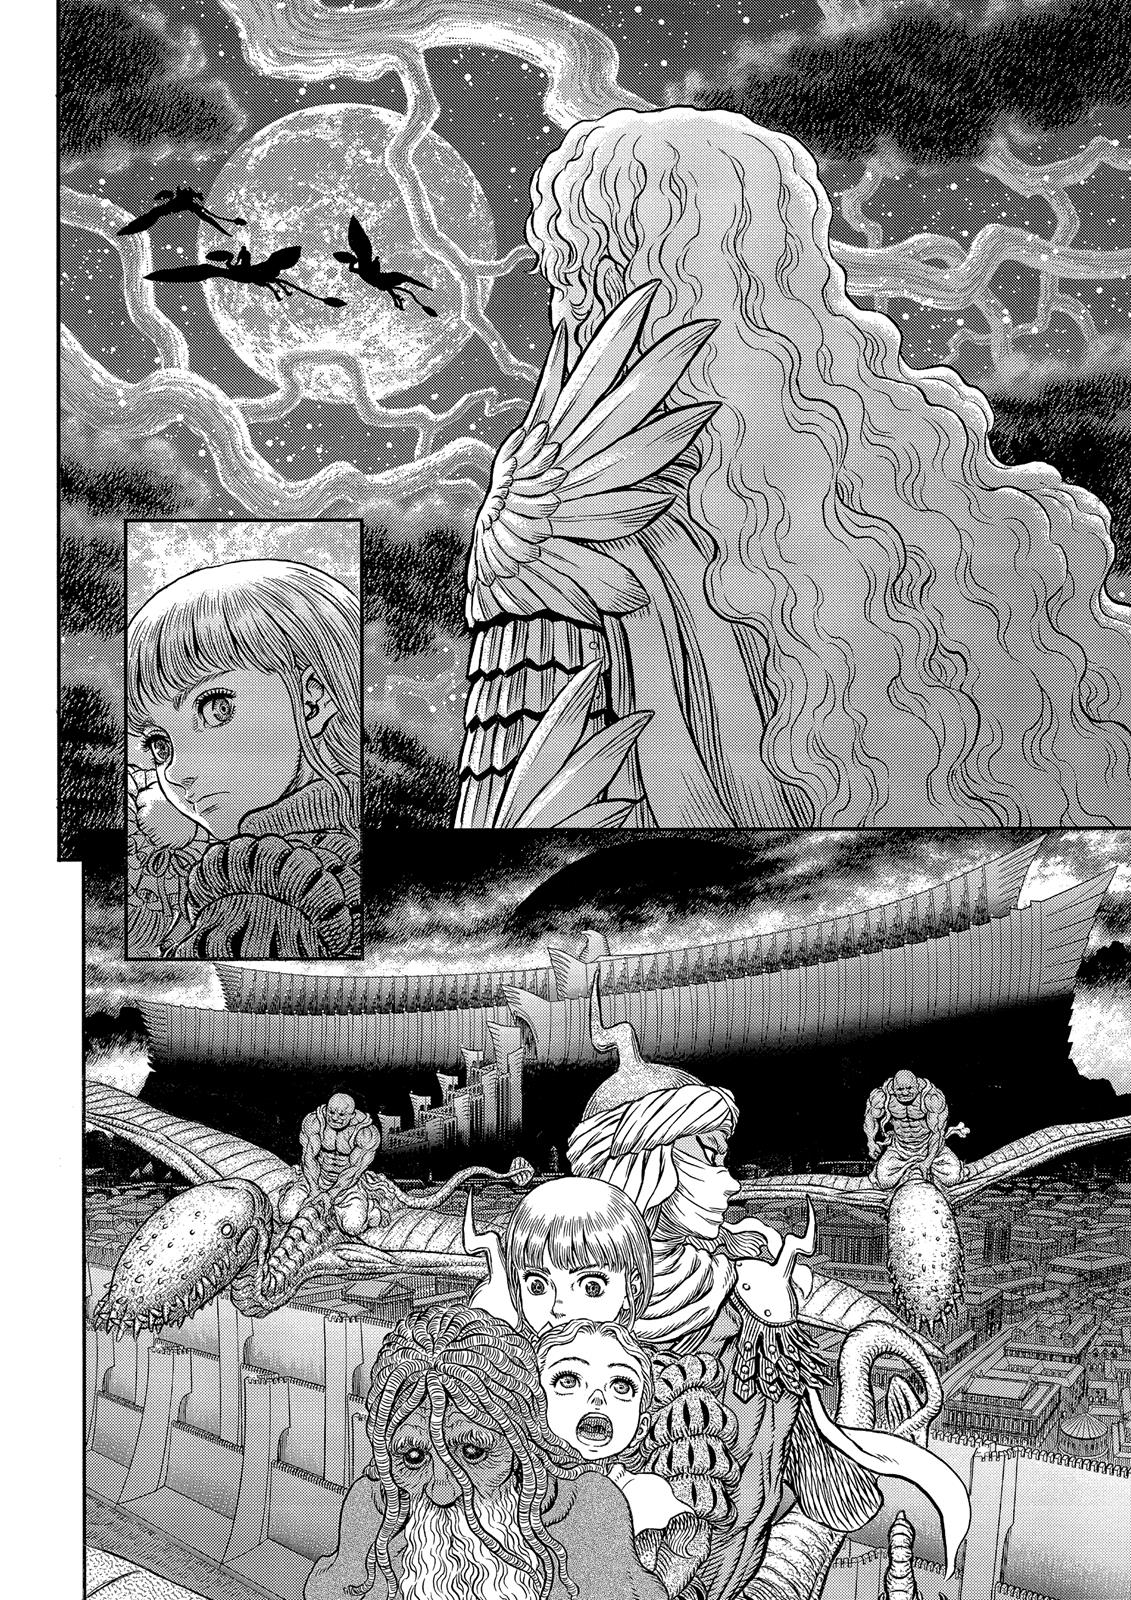 Berserk Manga Chapter 341 image 21